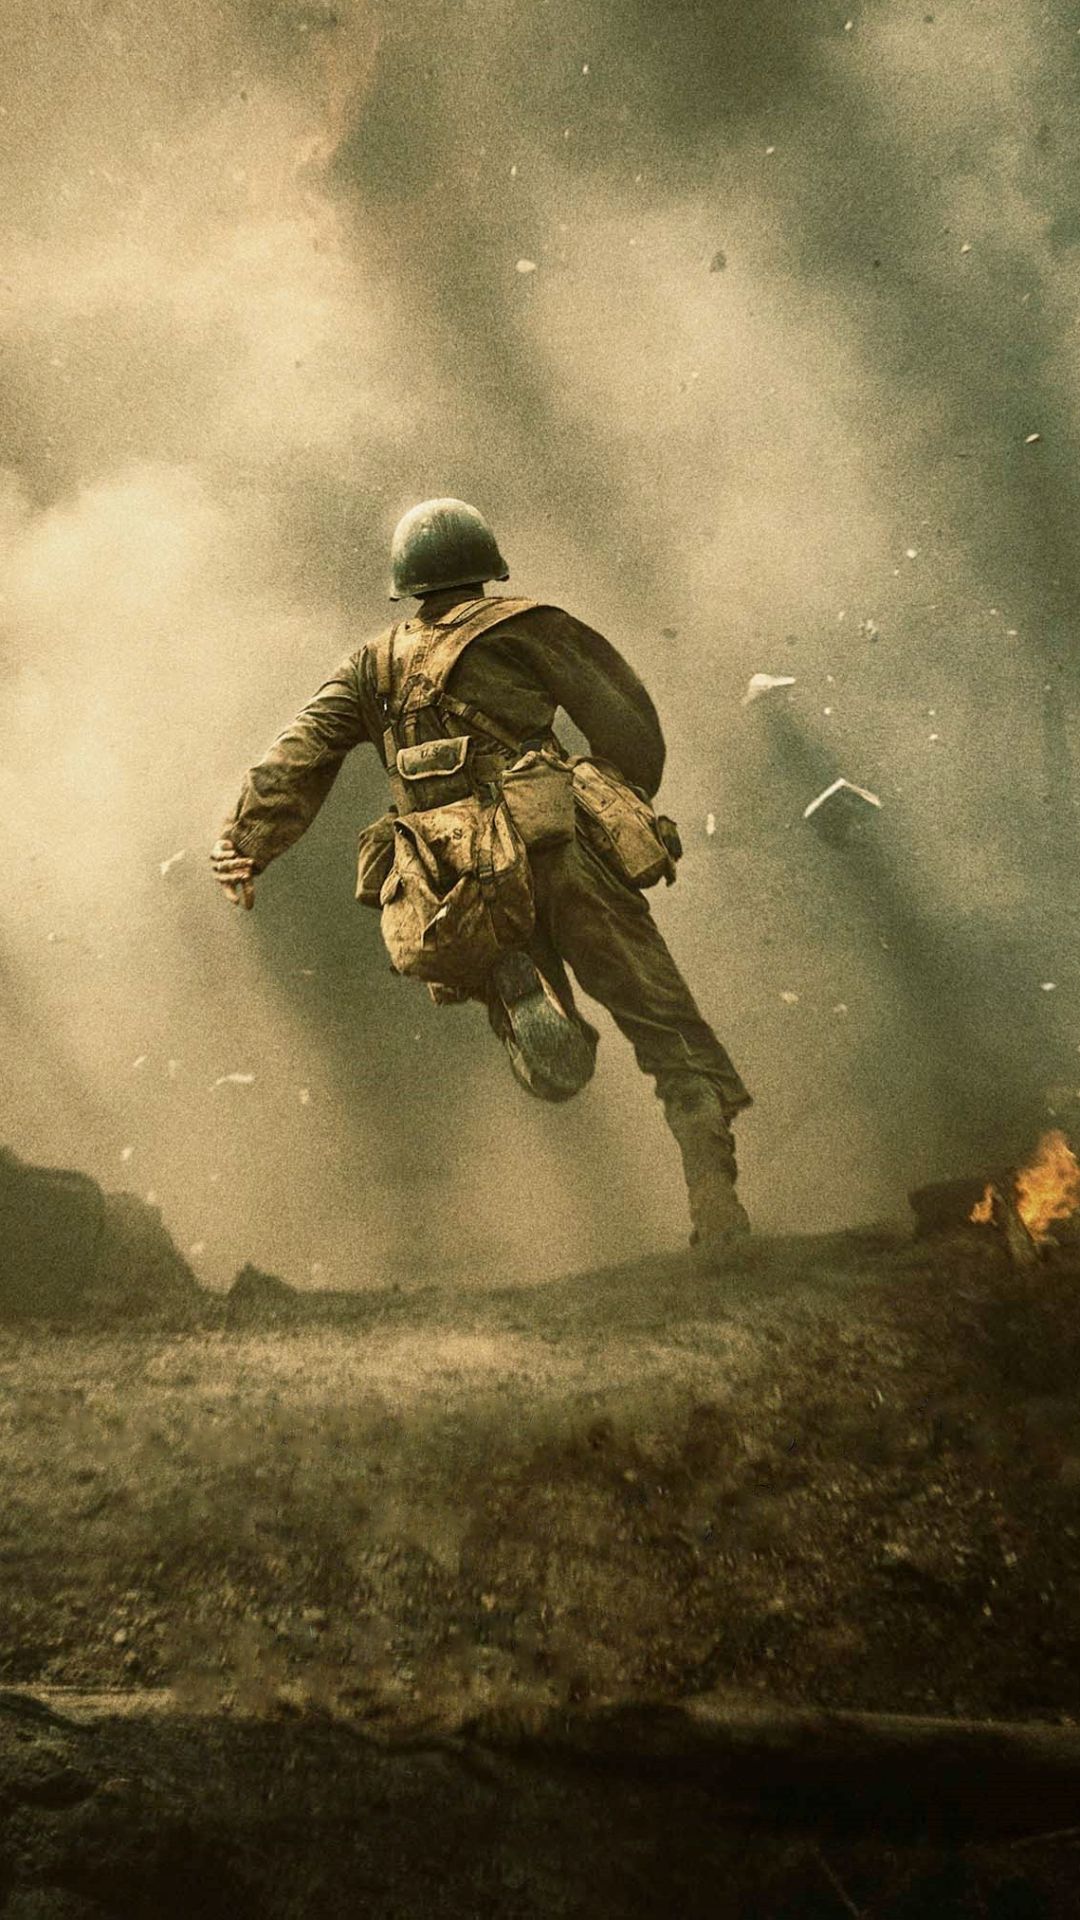 world war ii, movie, hacksaw ridge, soldier